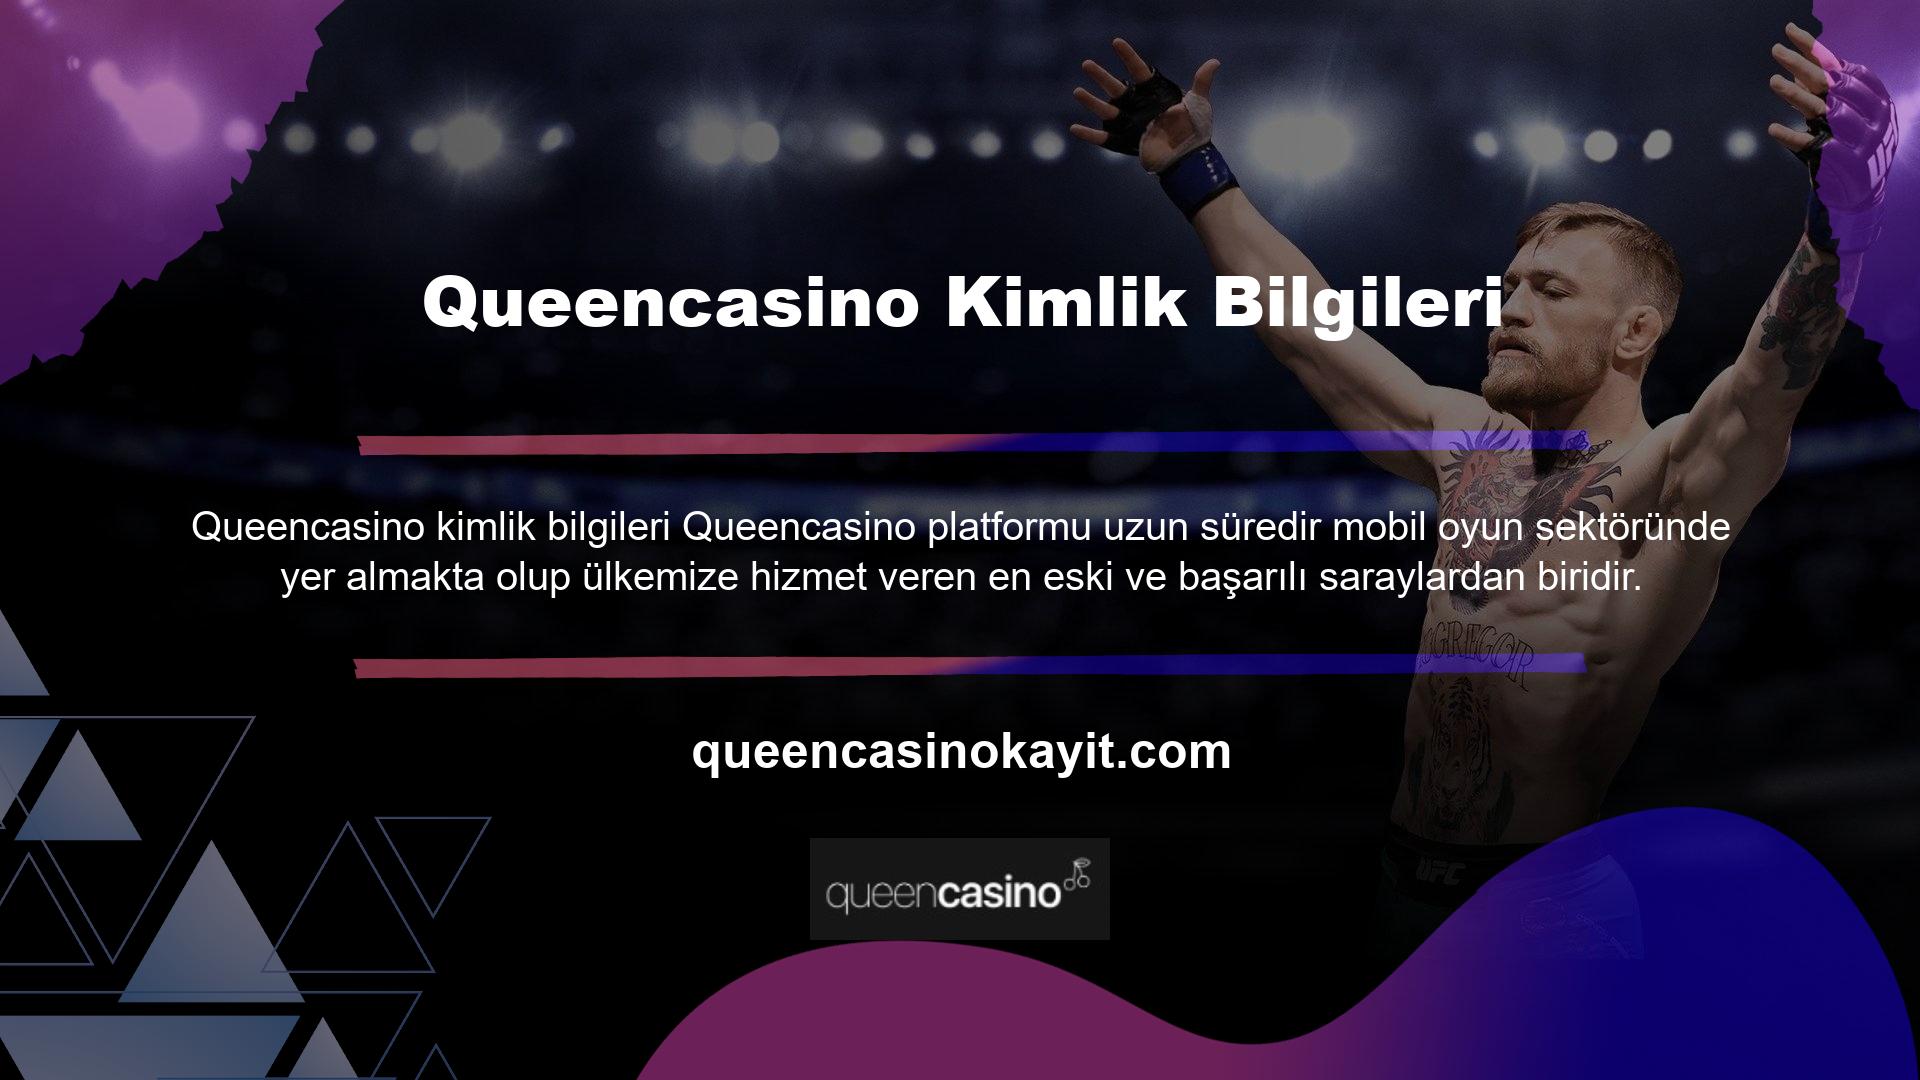 Queencasino portal bahis sitesi, kullanıcılarını memnun etmek için çeşitli teklifler ve birçok bonus etkinliği sunan profesyonel bir site haline geldi